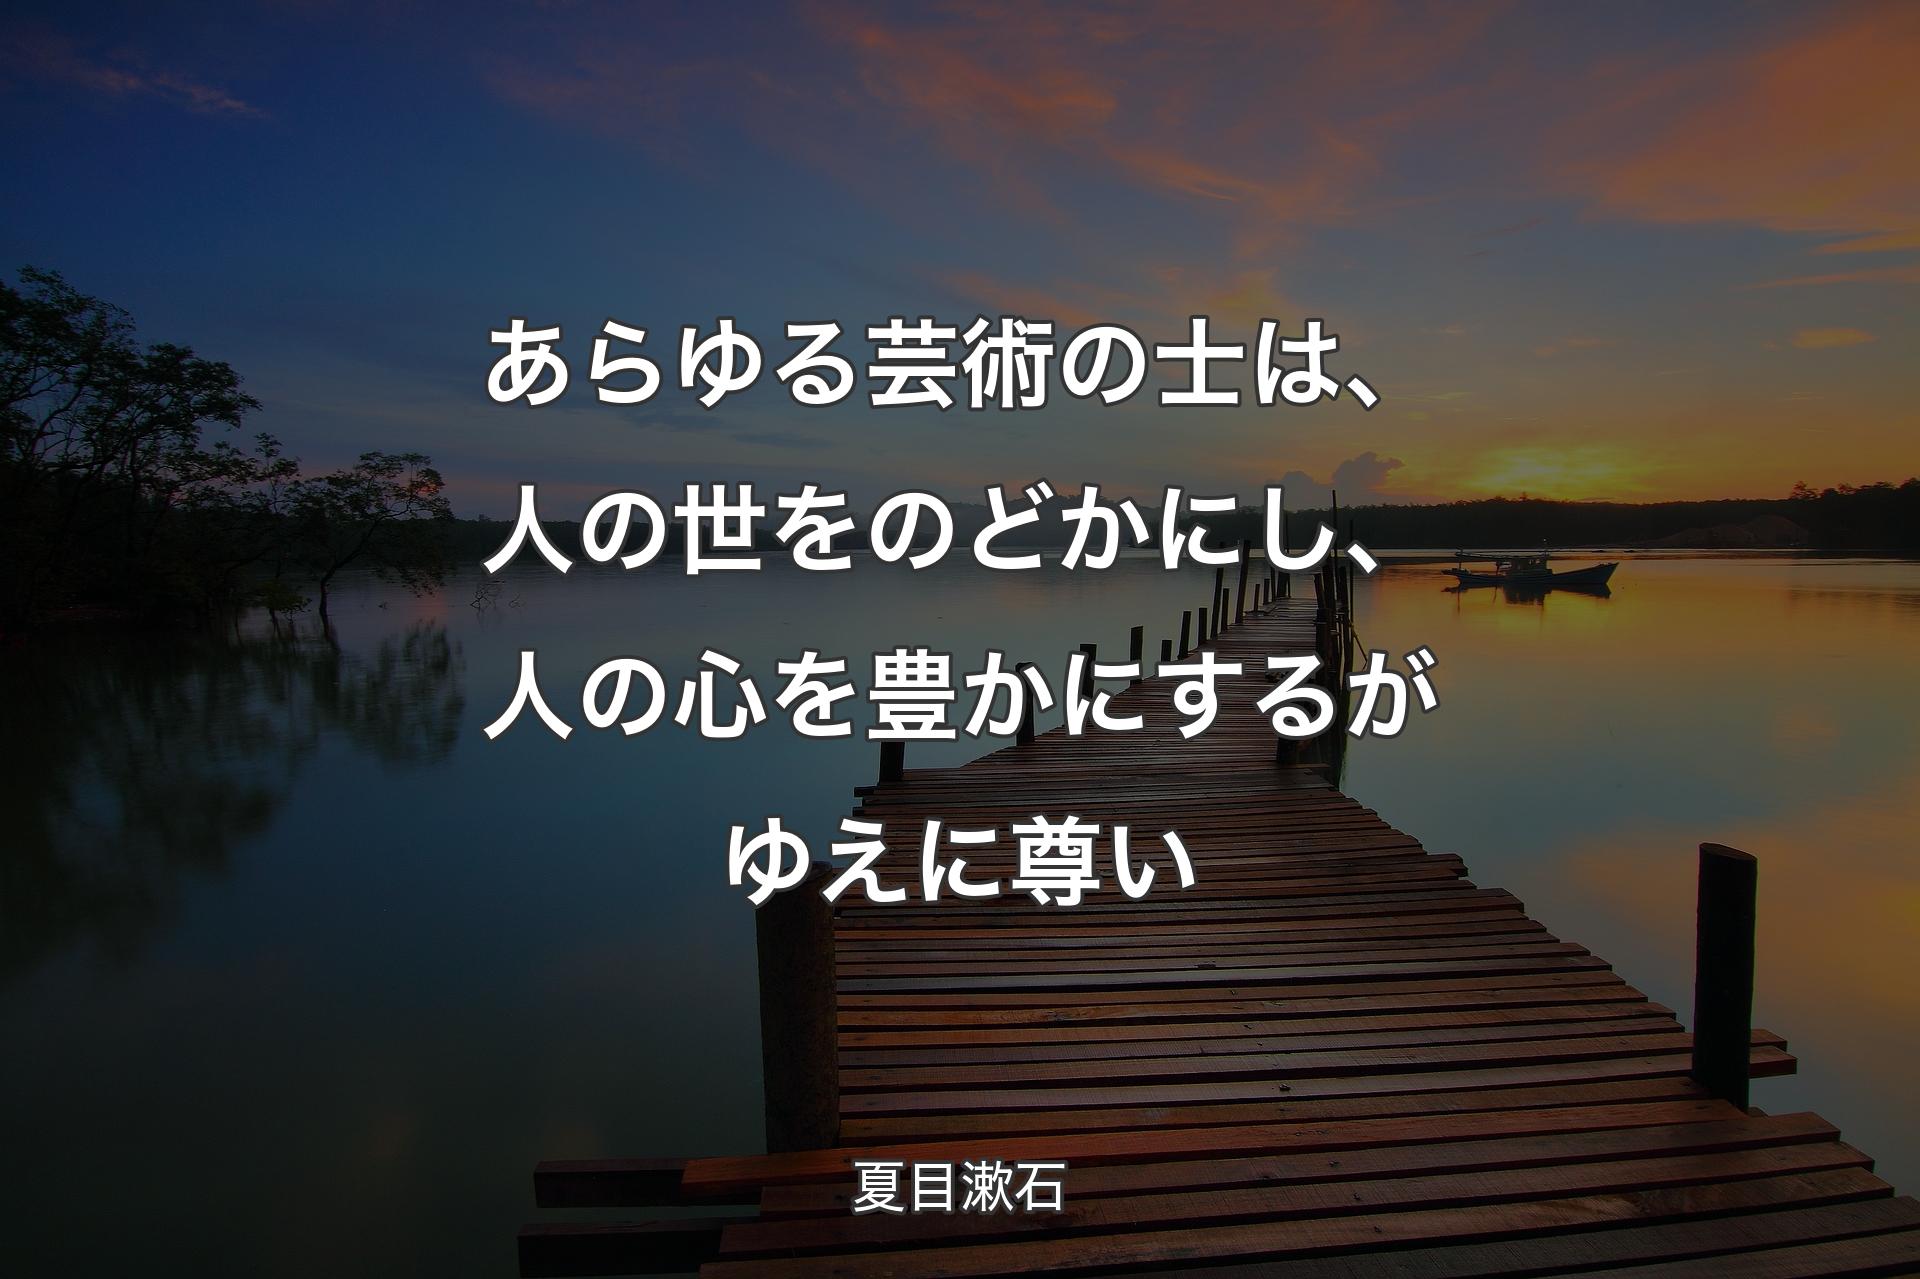 【背景3】あらゆる芸術の士は、人の世をのどかにし、人の心を豊かにするがゆえに尊い - 夏目漱石